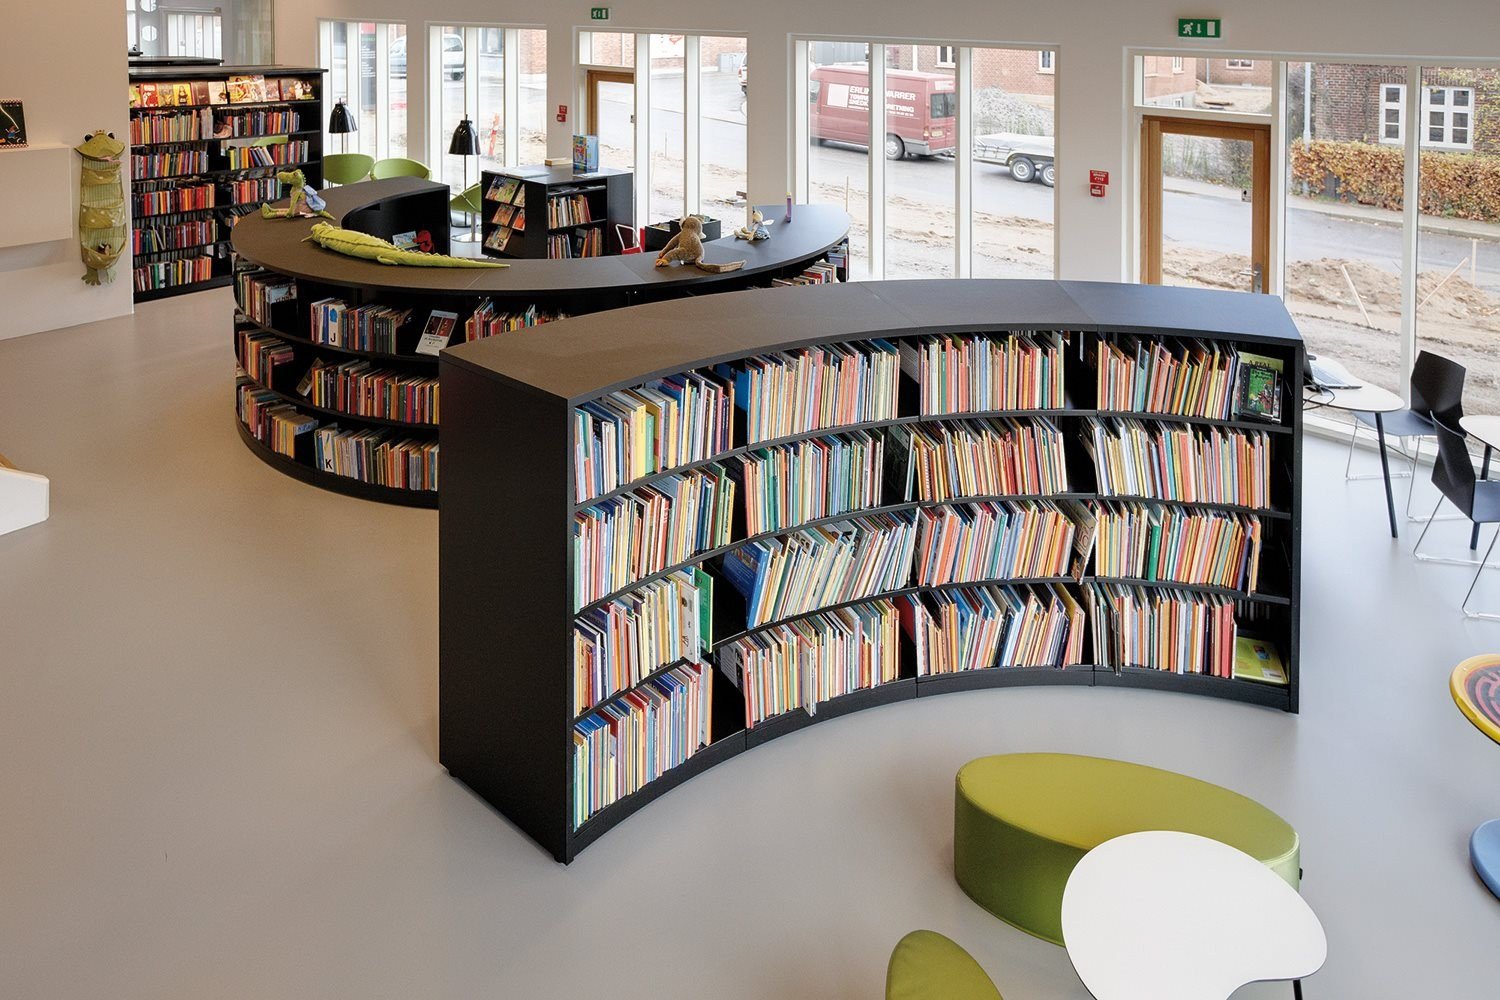 Attachment library. Интерьер современной библиотеки. Стеллажи для библиотеки. Библиотека в современном стиле. Мебель для читального зала библиотеки.